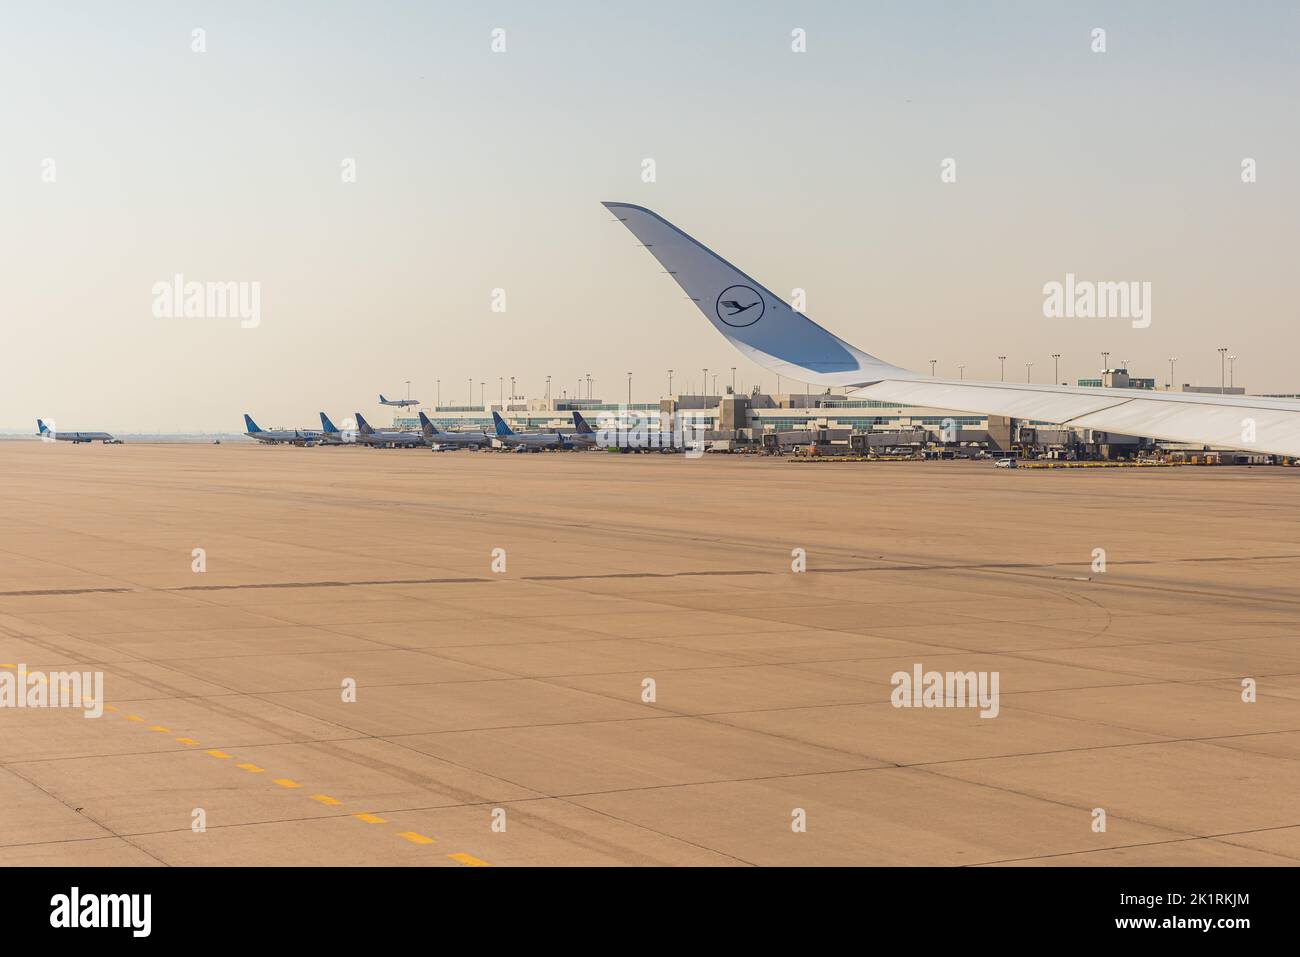 MUNICH, ALEMANIA - 7 DE SEPTIEMBRE: Ala Airbus de Lufthansa con aviones unidos atracados en las puertas del aeropuerto de Denver el 7 de septiembre de 2022 en Denver, EE.UU Foto de stock